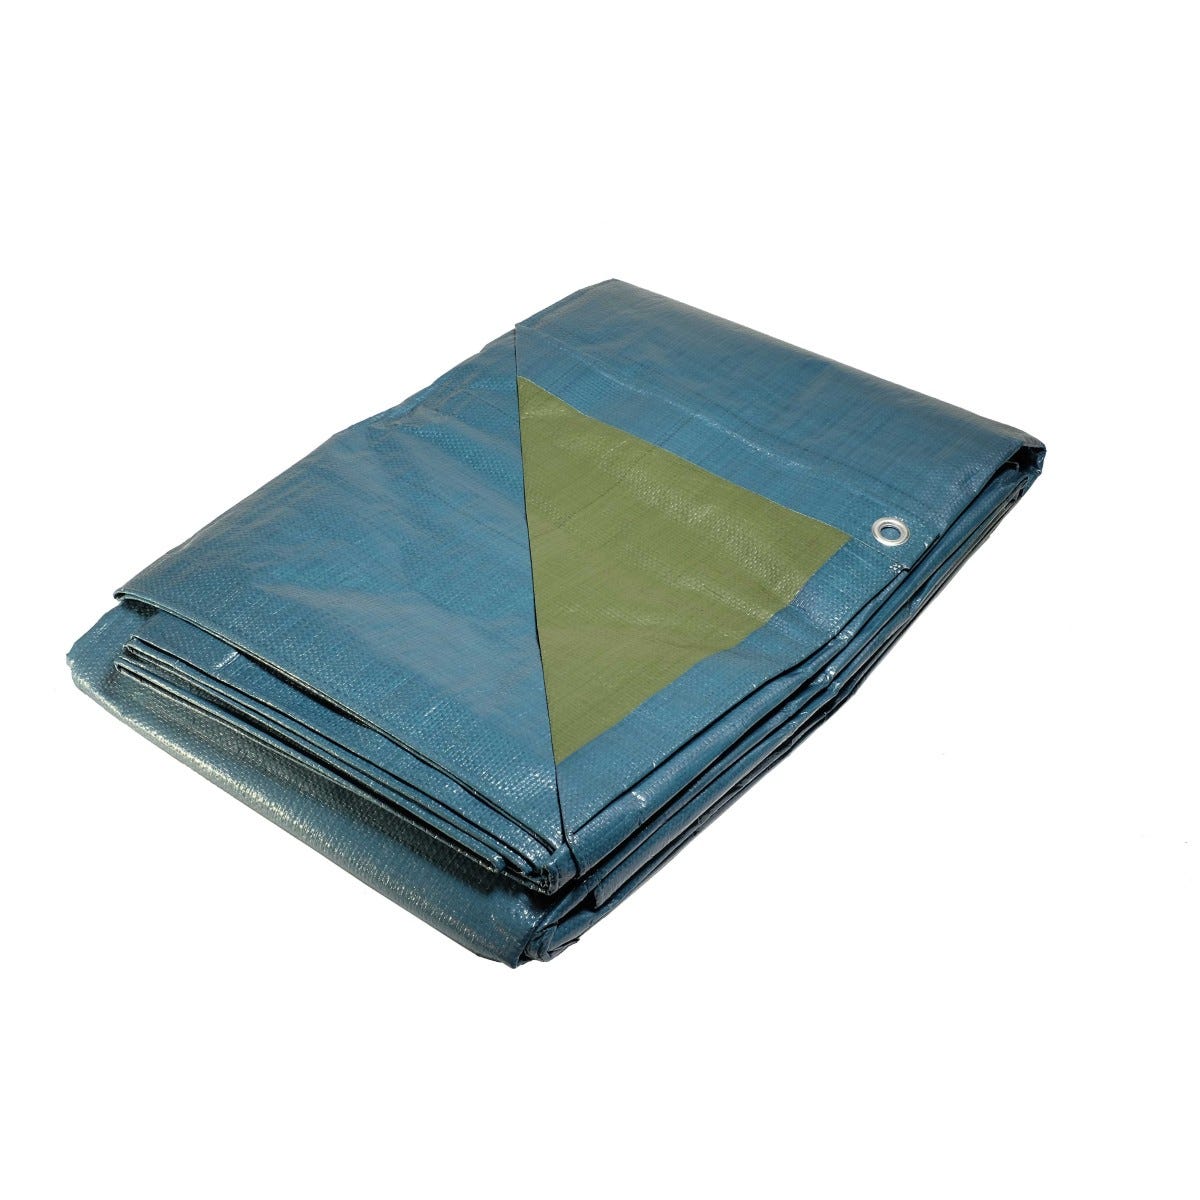 Bâche plastique 2x3 m bleue et verte 150g/m² - bâche de protection